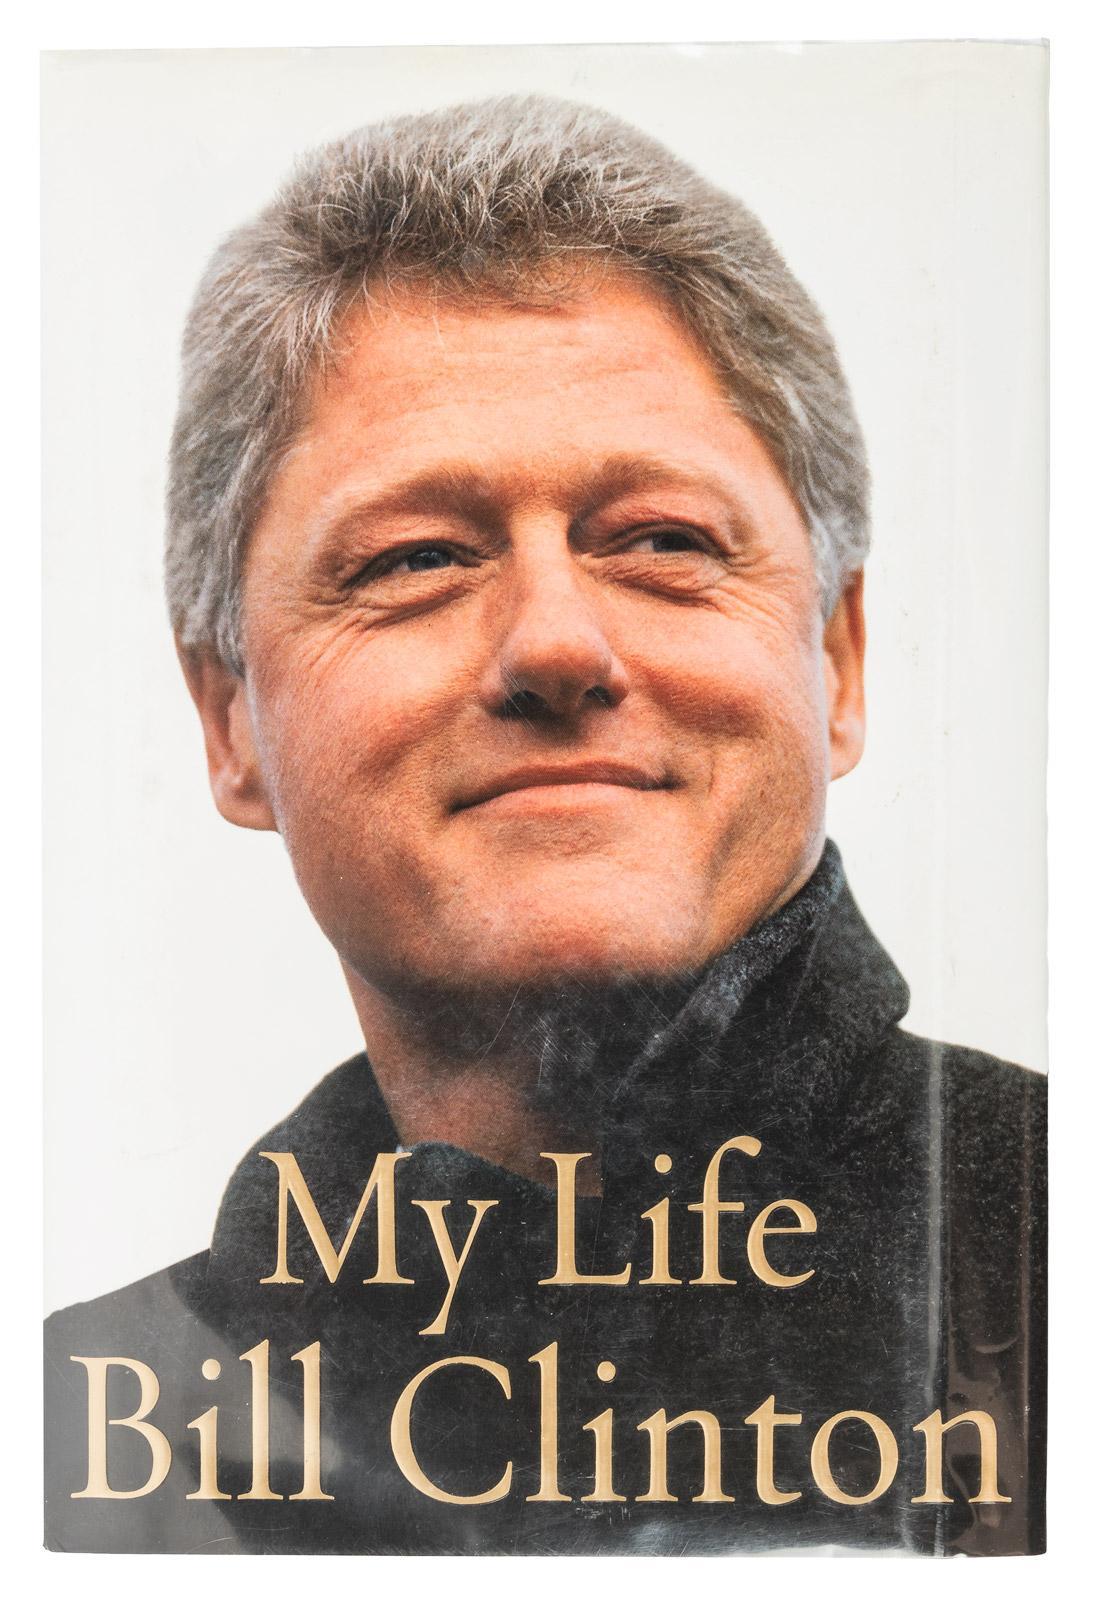 Clinton, Bill. Ma vie.  New York : Alfred A. Knopf, 2004. Première édition, première impression, 8ov. Signé par Bill Clinton sur la page de titre. Présenté dans ses cartons bleus d'origine et sa jaquette picturale.

Il s'agit d'une première édition